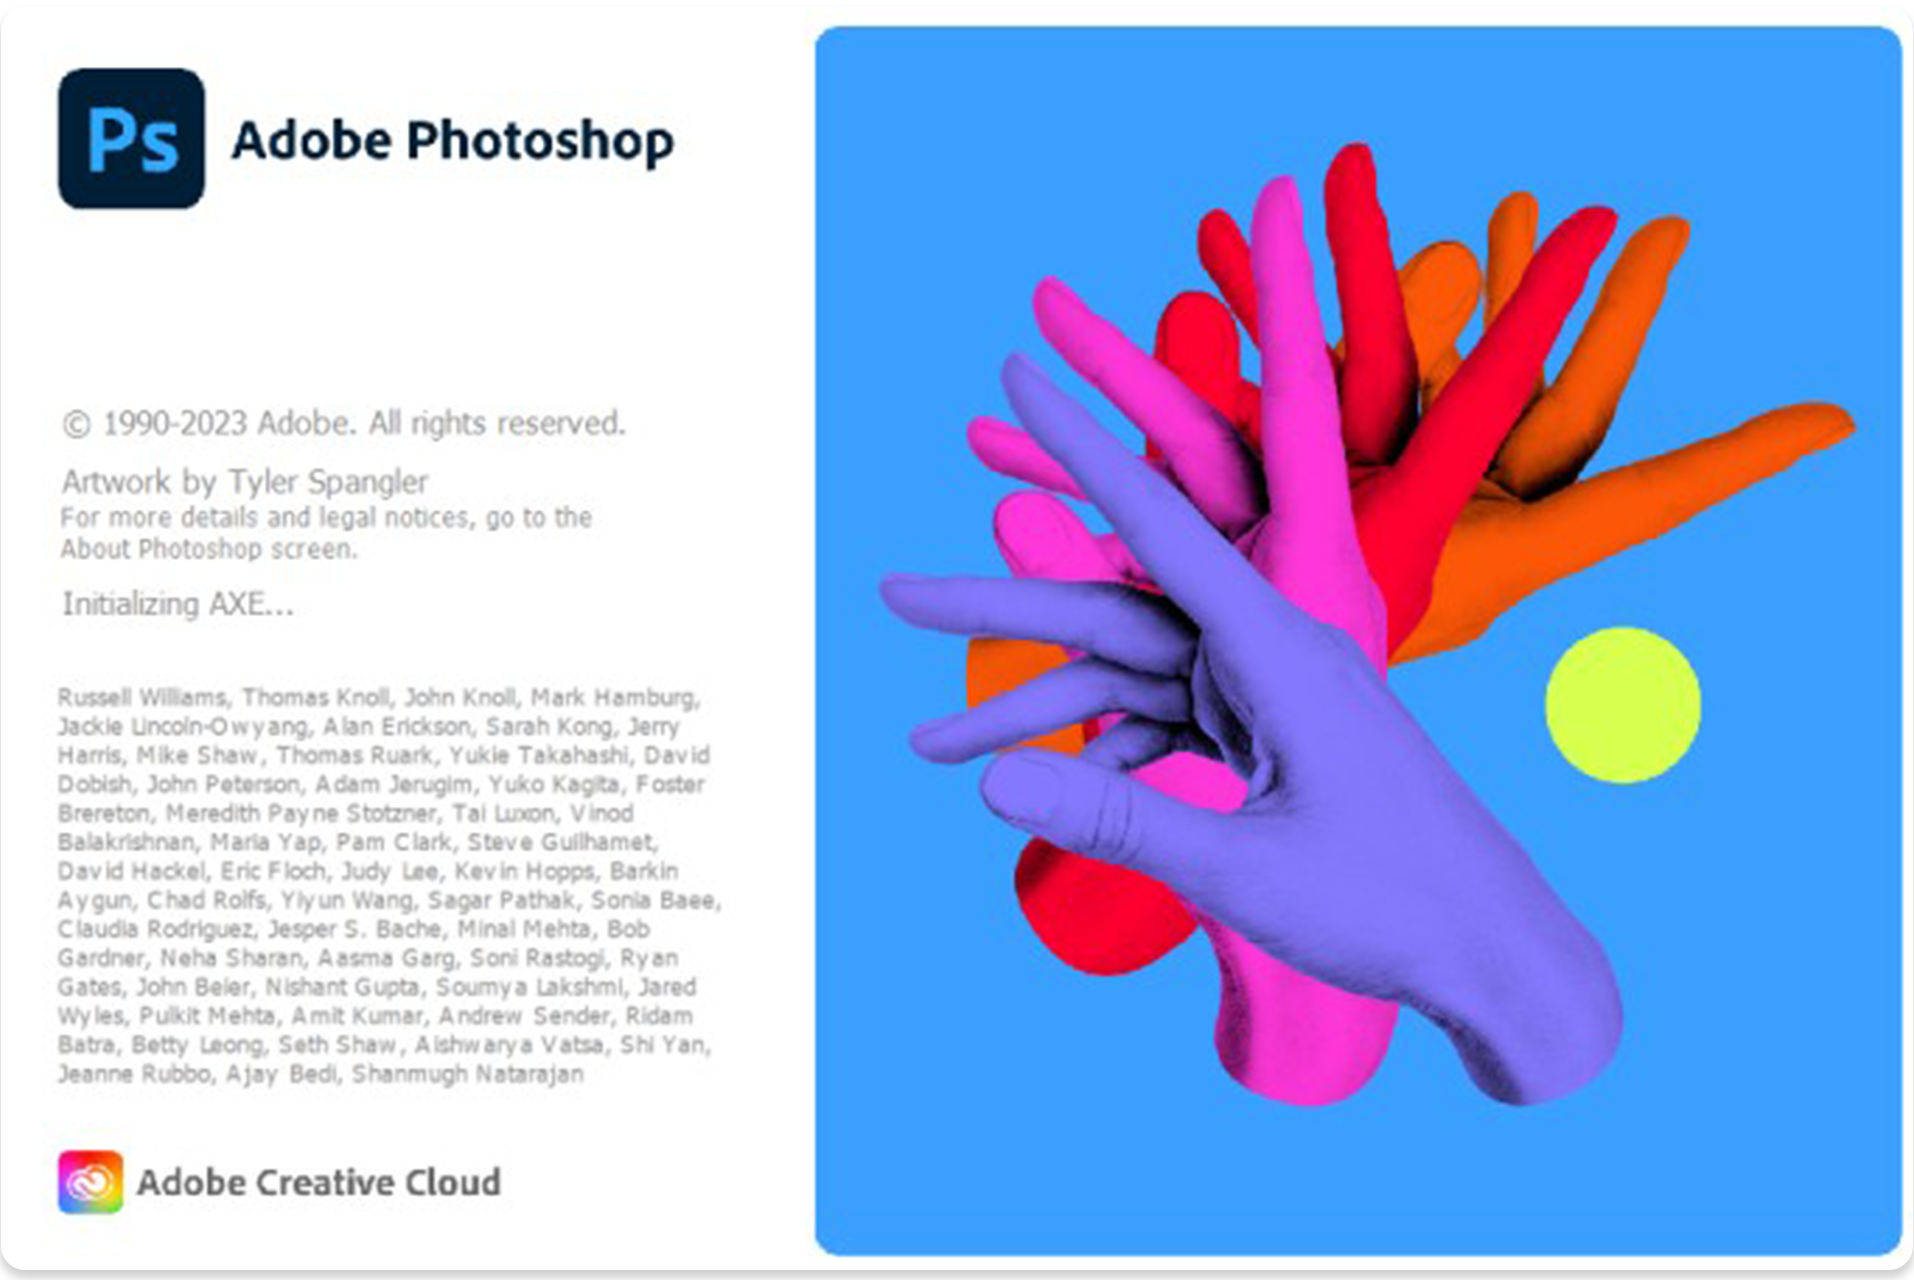 ซื้อโปรแกรม Adobe Photoshop คือ โปรแกรมตกแต่งรูป สร้างสรรค์งาน เกี่ยวกับรูปที่ขึ้นชื่อว่าดีที่สุดในโลก ที่นักออกแบบ นักถ่ายภาพและศิลปินหลายล้านคนทั่วโลกเลือกใช้ เครื่องมือที่ใช้งานง่าย 